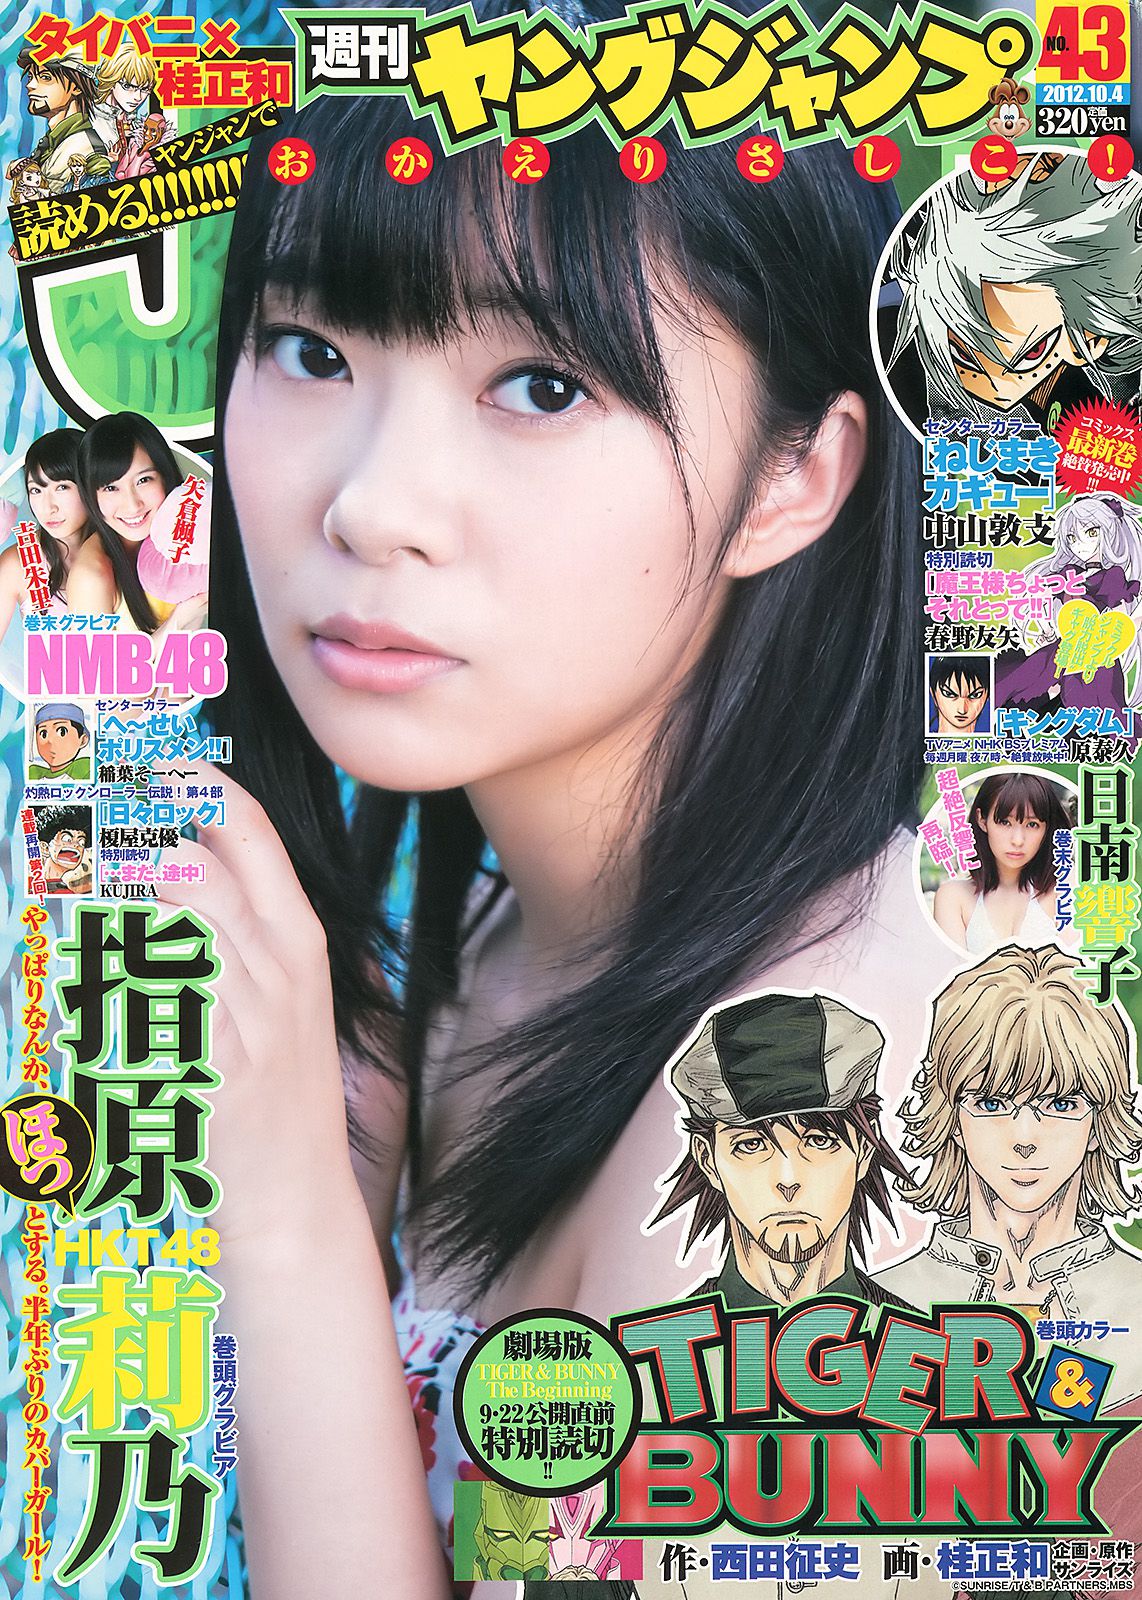 指原莉乃 NMB48(吉田朱里?矢倉楓子) 日南響子 [Weekly Young Jump] 2012年No.43 写真杂志1